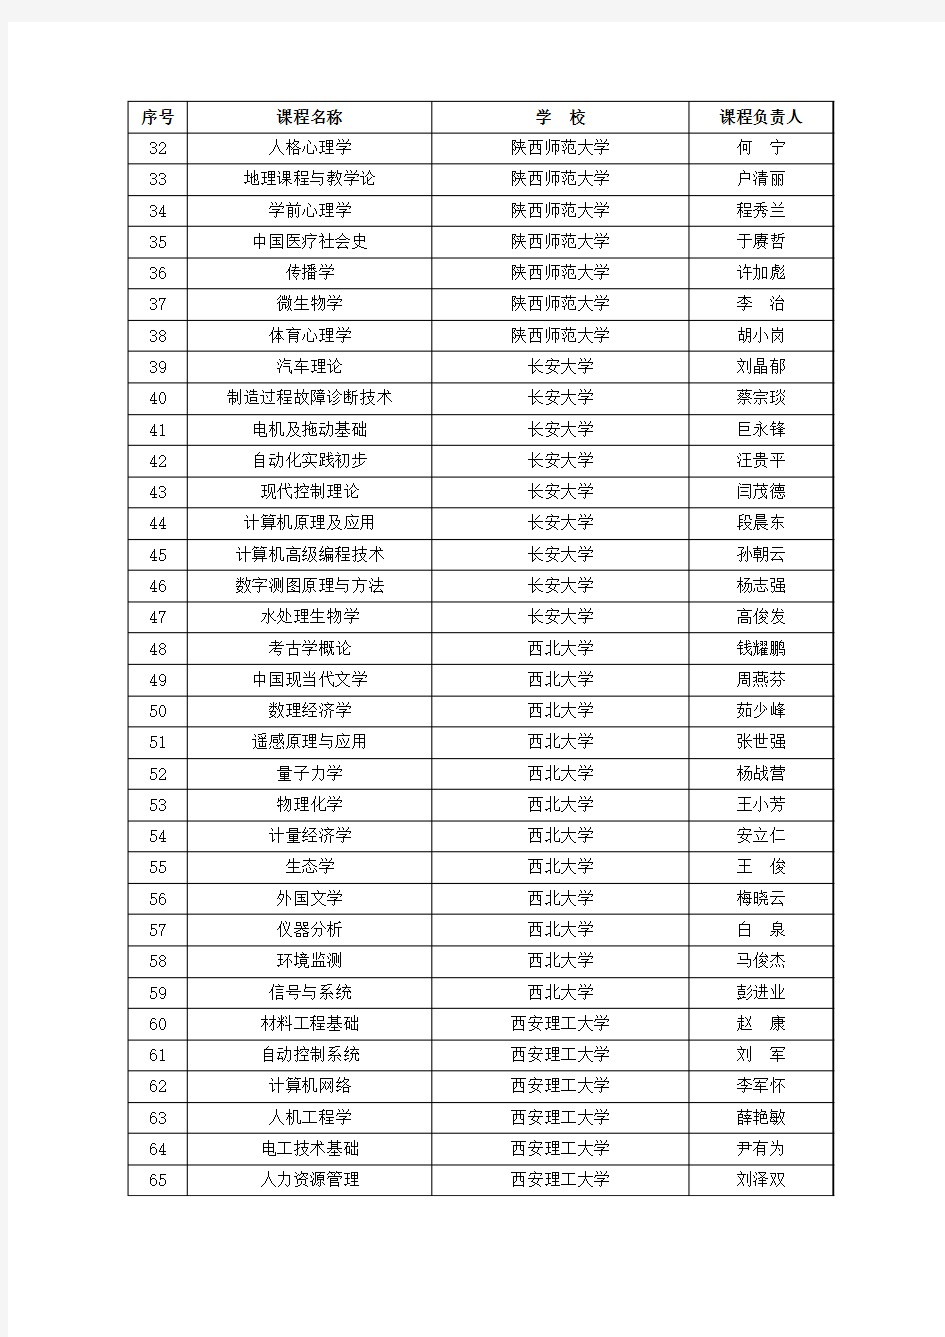 2014年陕西本科高校省级精品资源共享课程项目名单